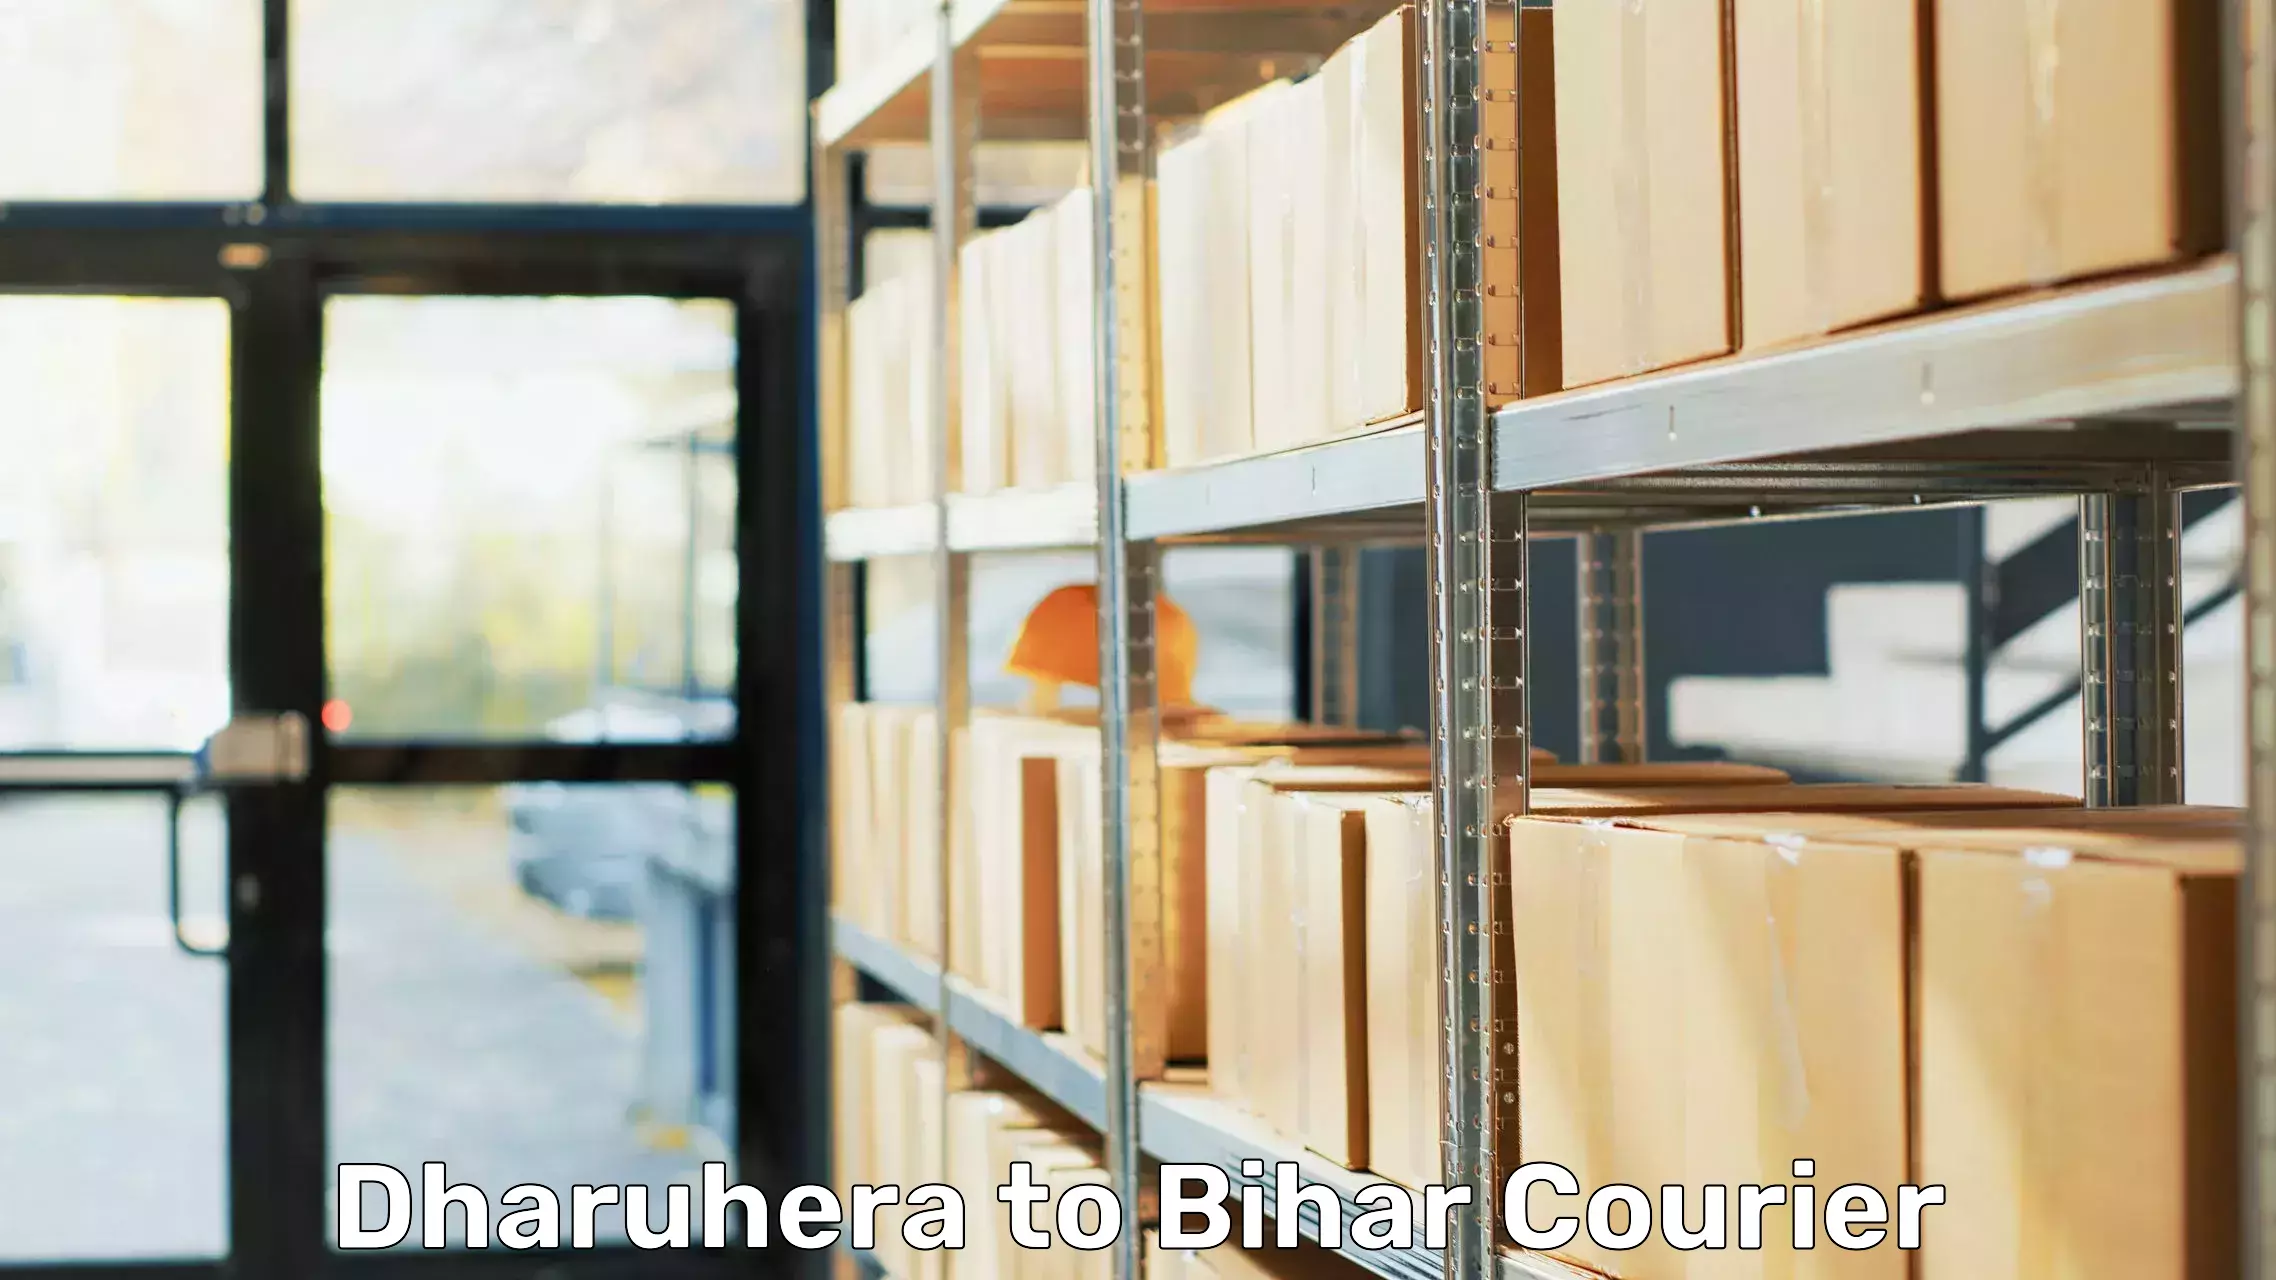 Furniture moving experts Dharuhera to Lakhisarai